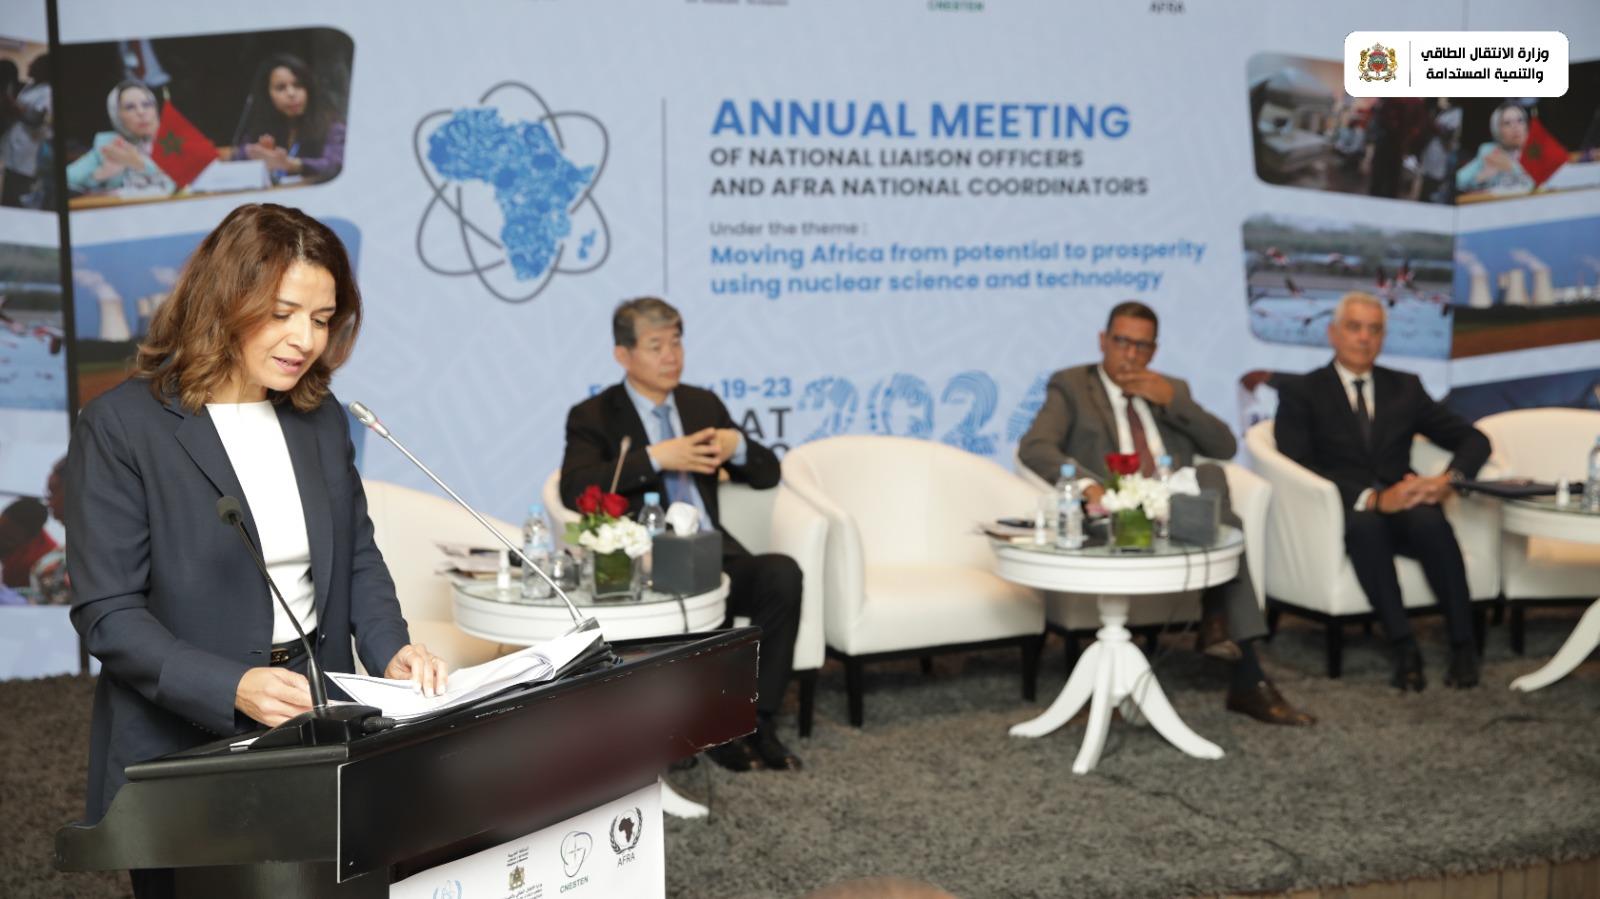 "تعزيز إفريقيا من الإمكانات إلى الازدهار من خلال العلوم والتكنولوجيا النووية".. محور اجتماع سنوي بالرباط